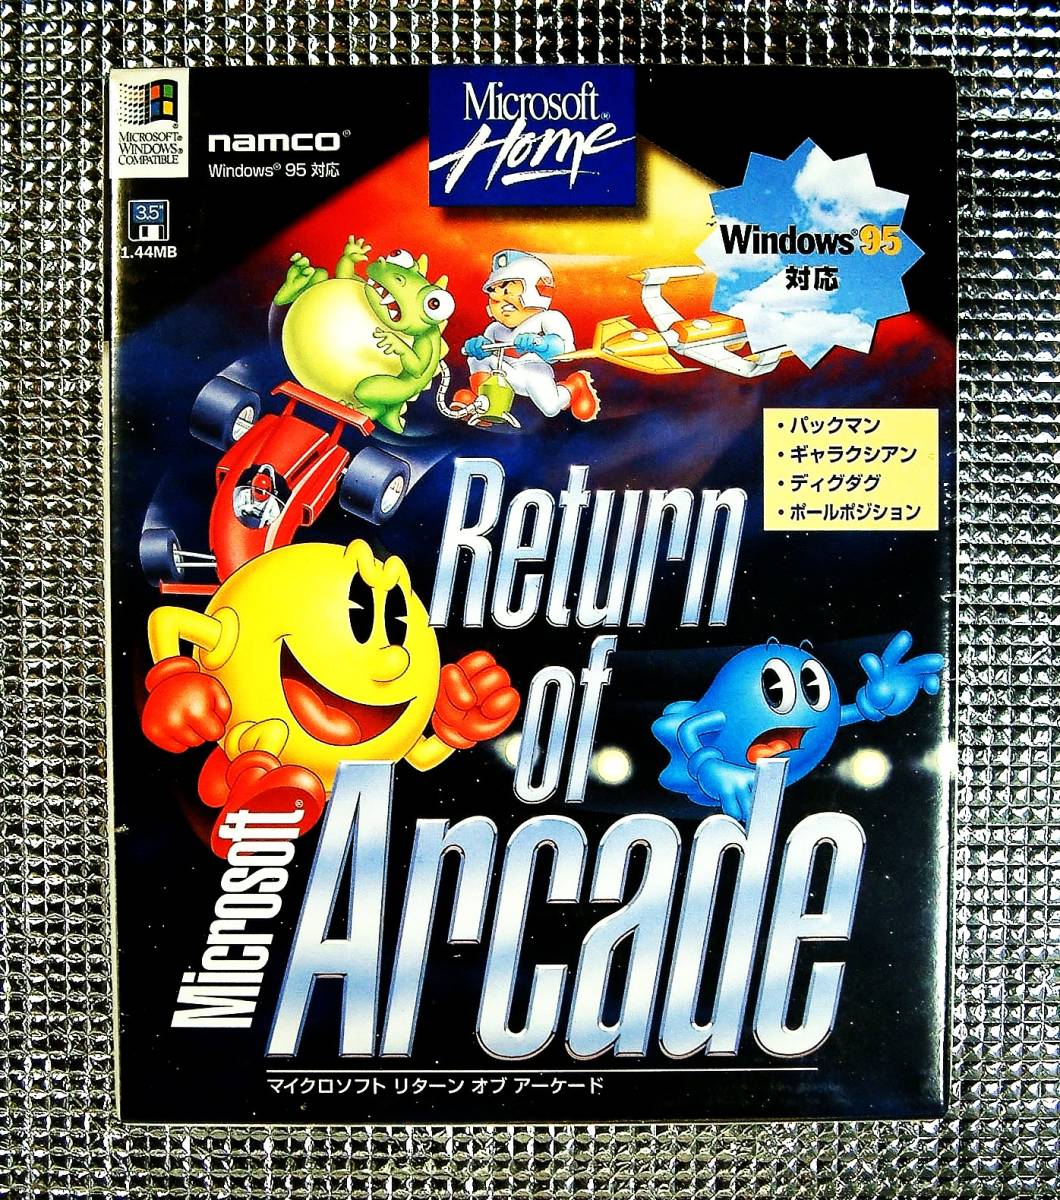 【4477】Microsoft Return of Arcade リターン オブ アーケード パックマン ギャラクシアン ディグダグ ポールポジション Pac-Man Galaxian